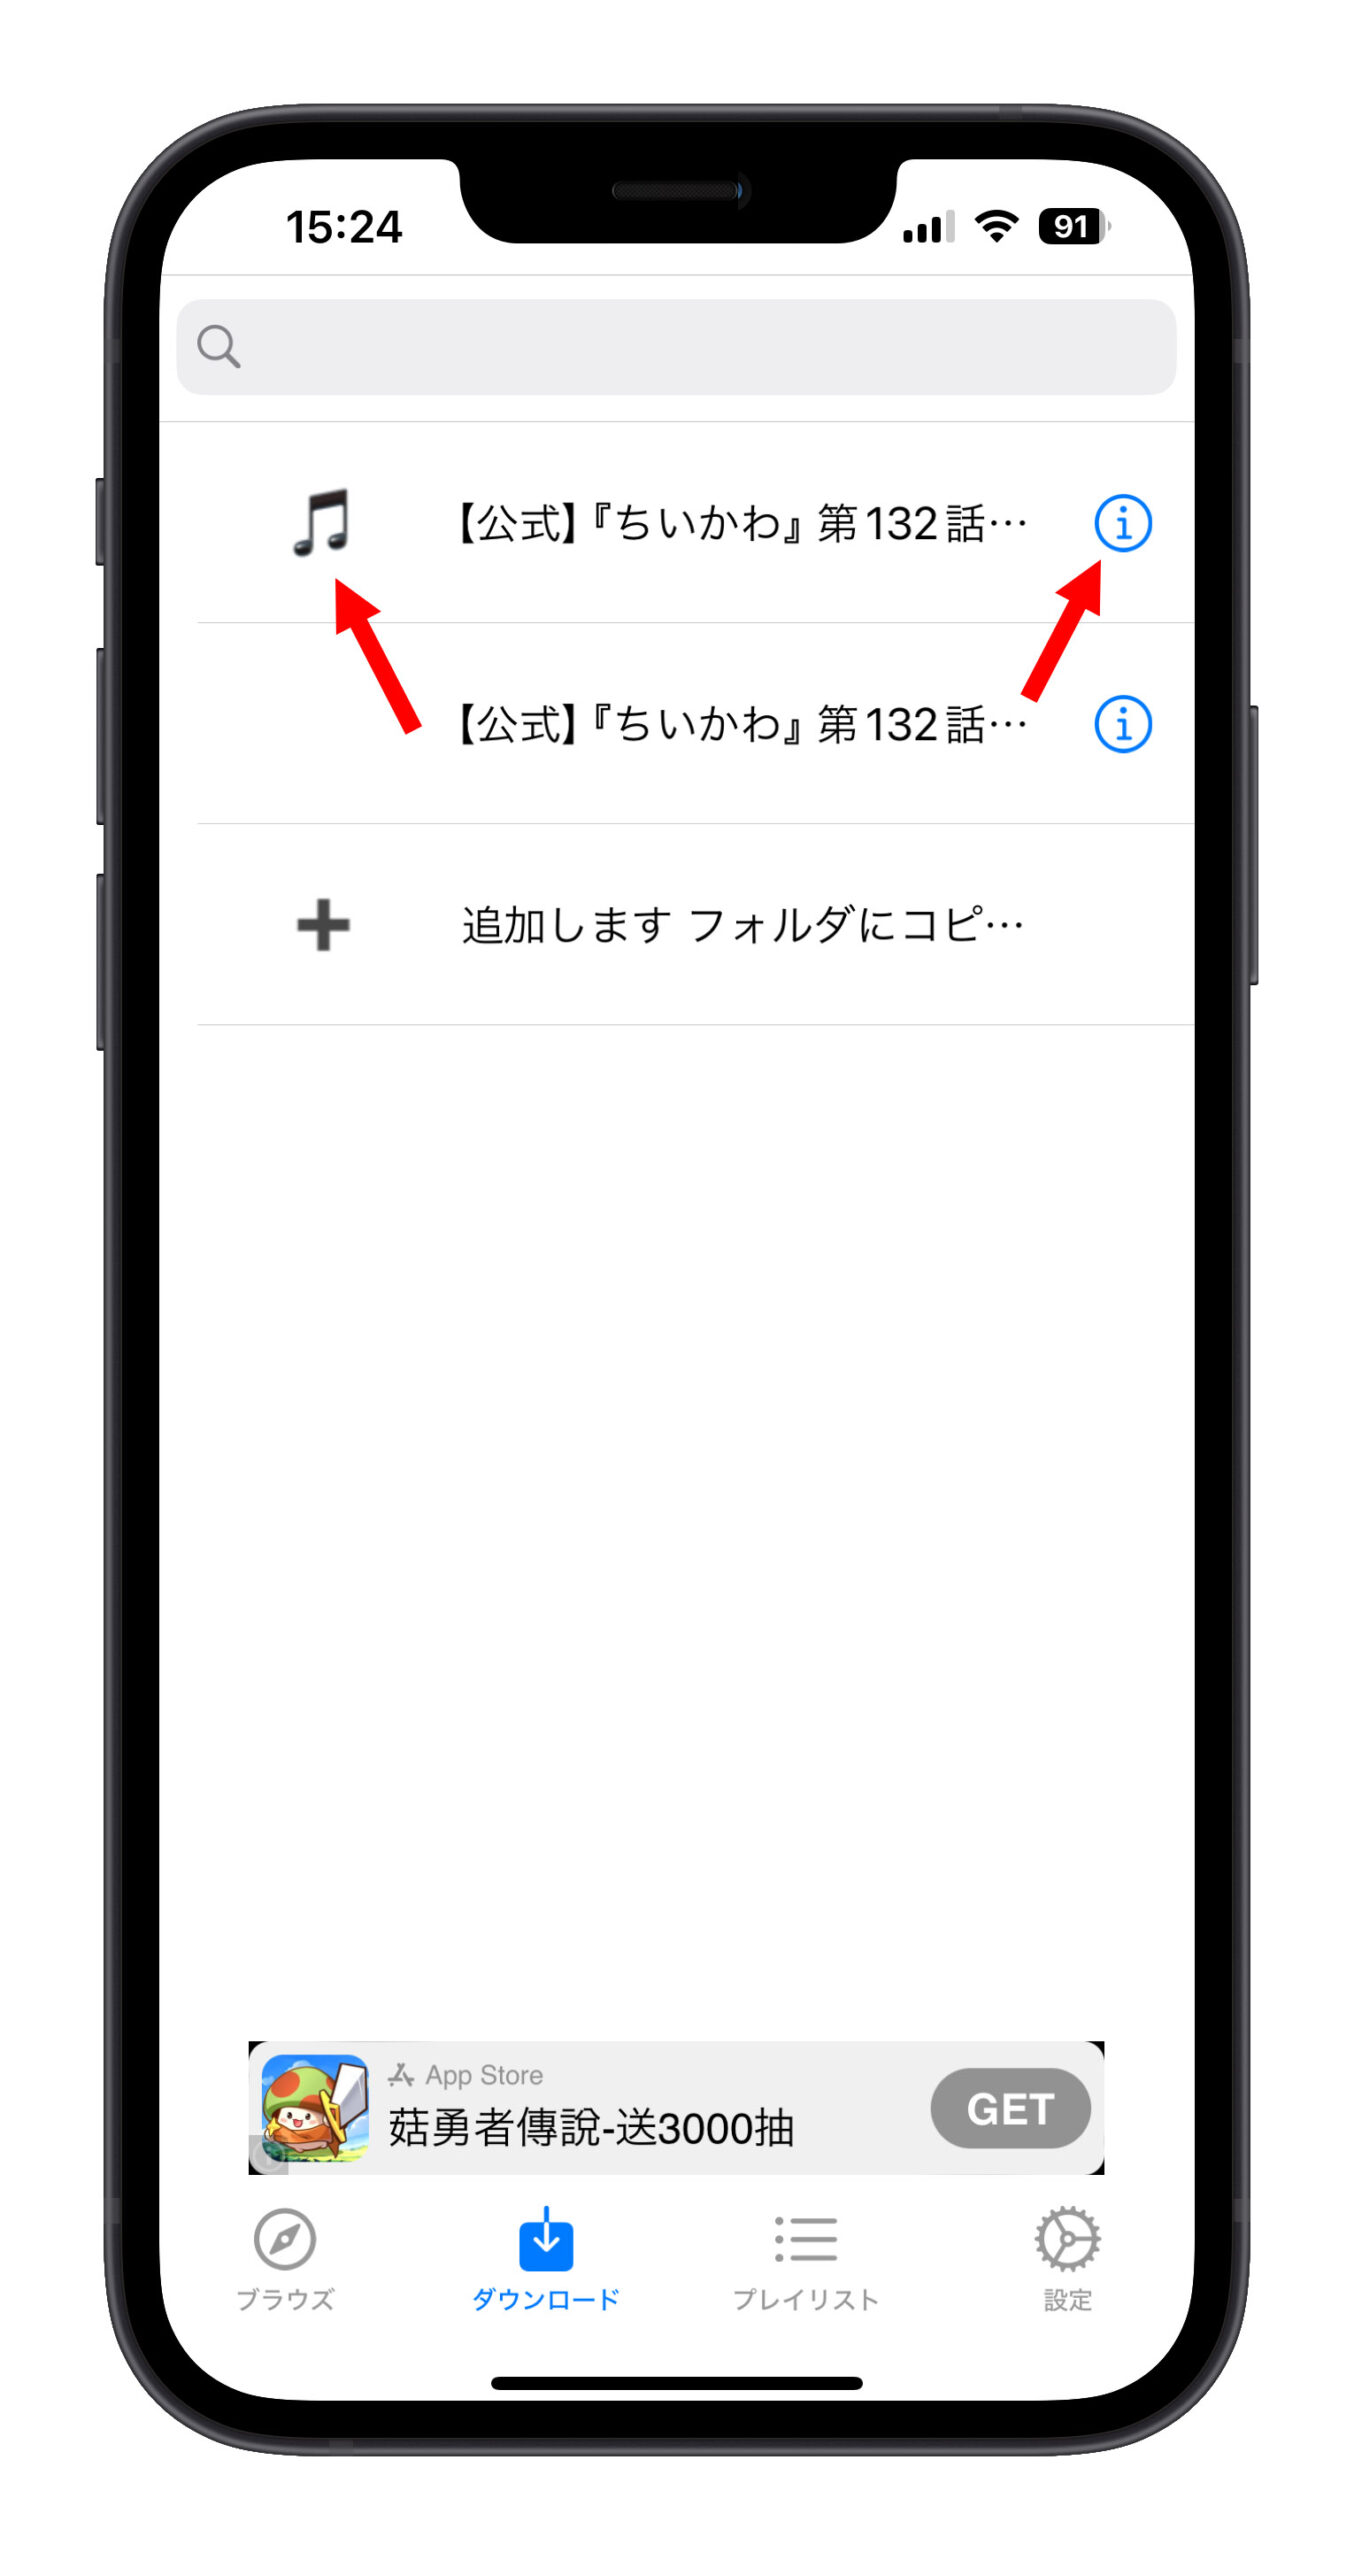 iPhone アプリ Video Master YouTube mp3 をダウンロード